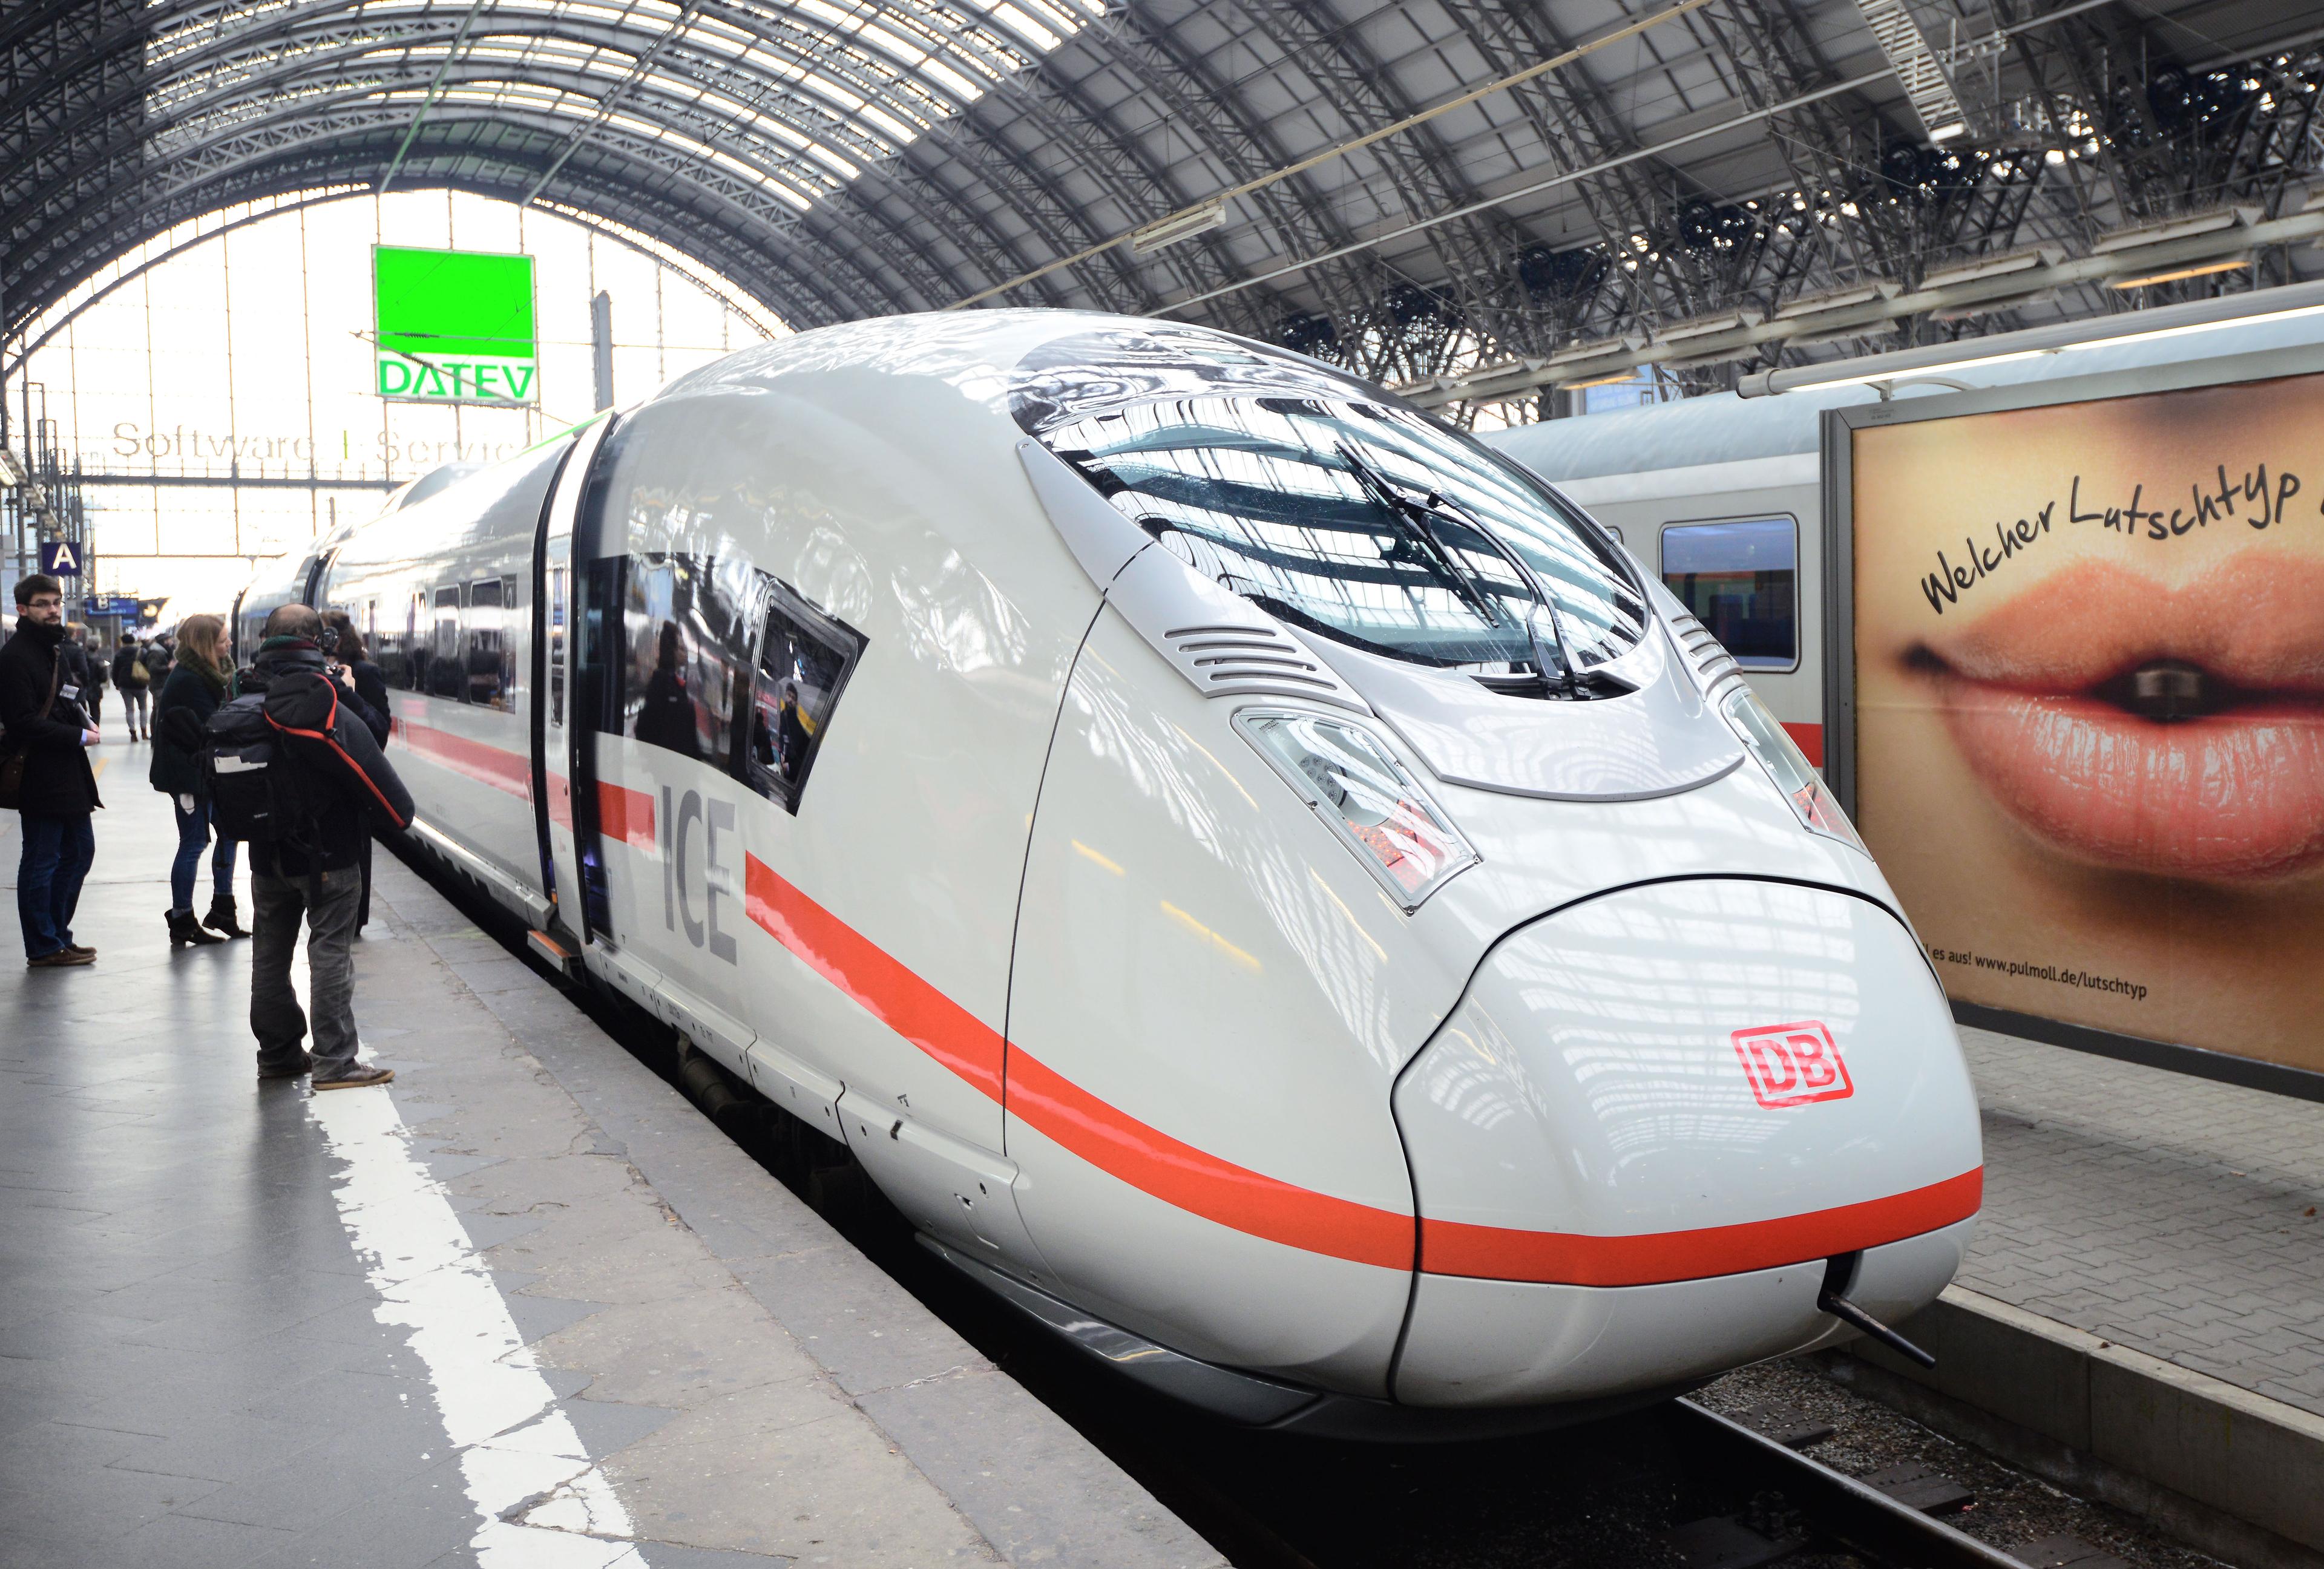  Den senaste generationen av ICE 3 Deutsche Bahn höghastighetståg, version 407. Tåget står vid centralstationen den 18 februari 2014 i Frankfurt/Main, Tyskland under en mediepresentation. Tåget är byggd av Siemens, har medgivande för en toppfart på 320 km per timme i Frankrike. I Tyskland är toppfarten cirka 300 kilometer per timme. (Foto: Thomas Lohnes / Getty Images)